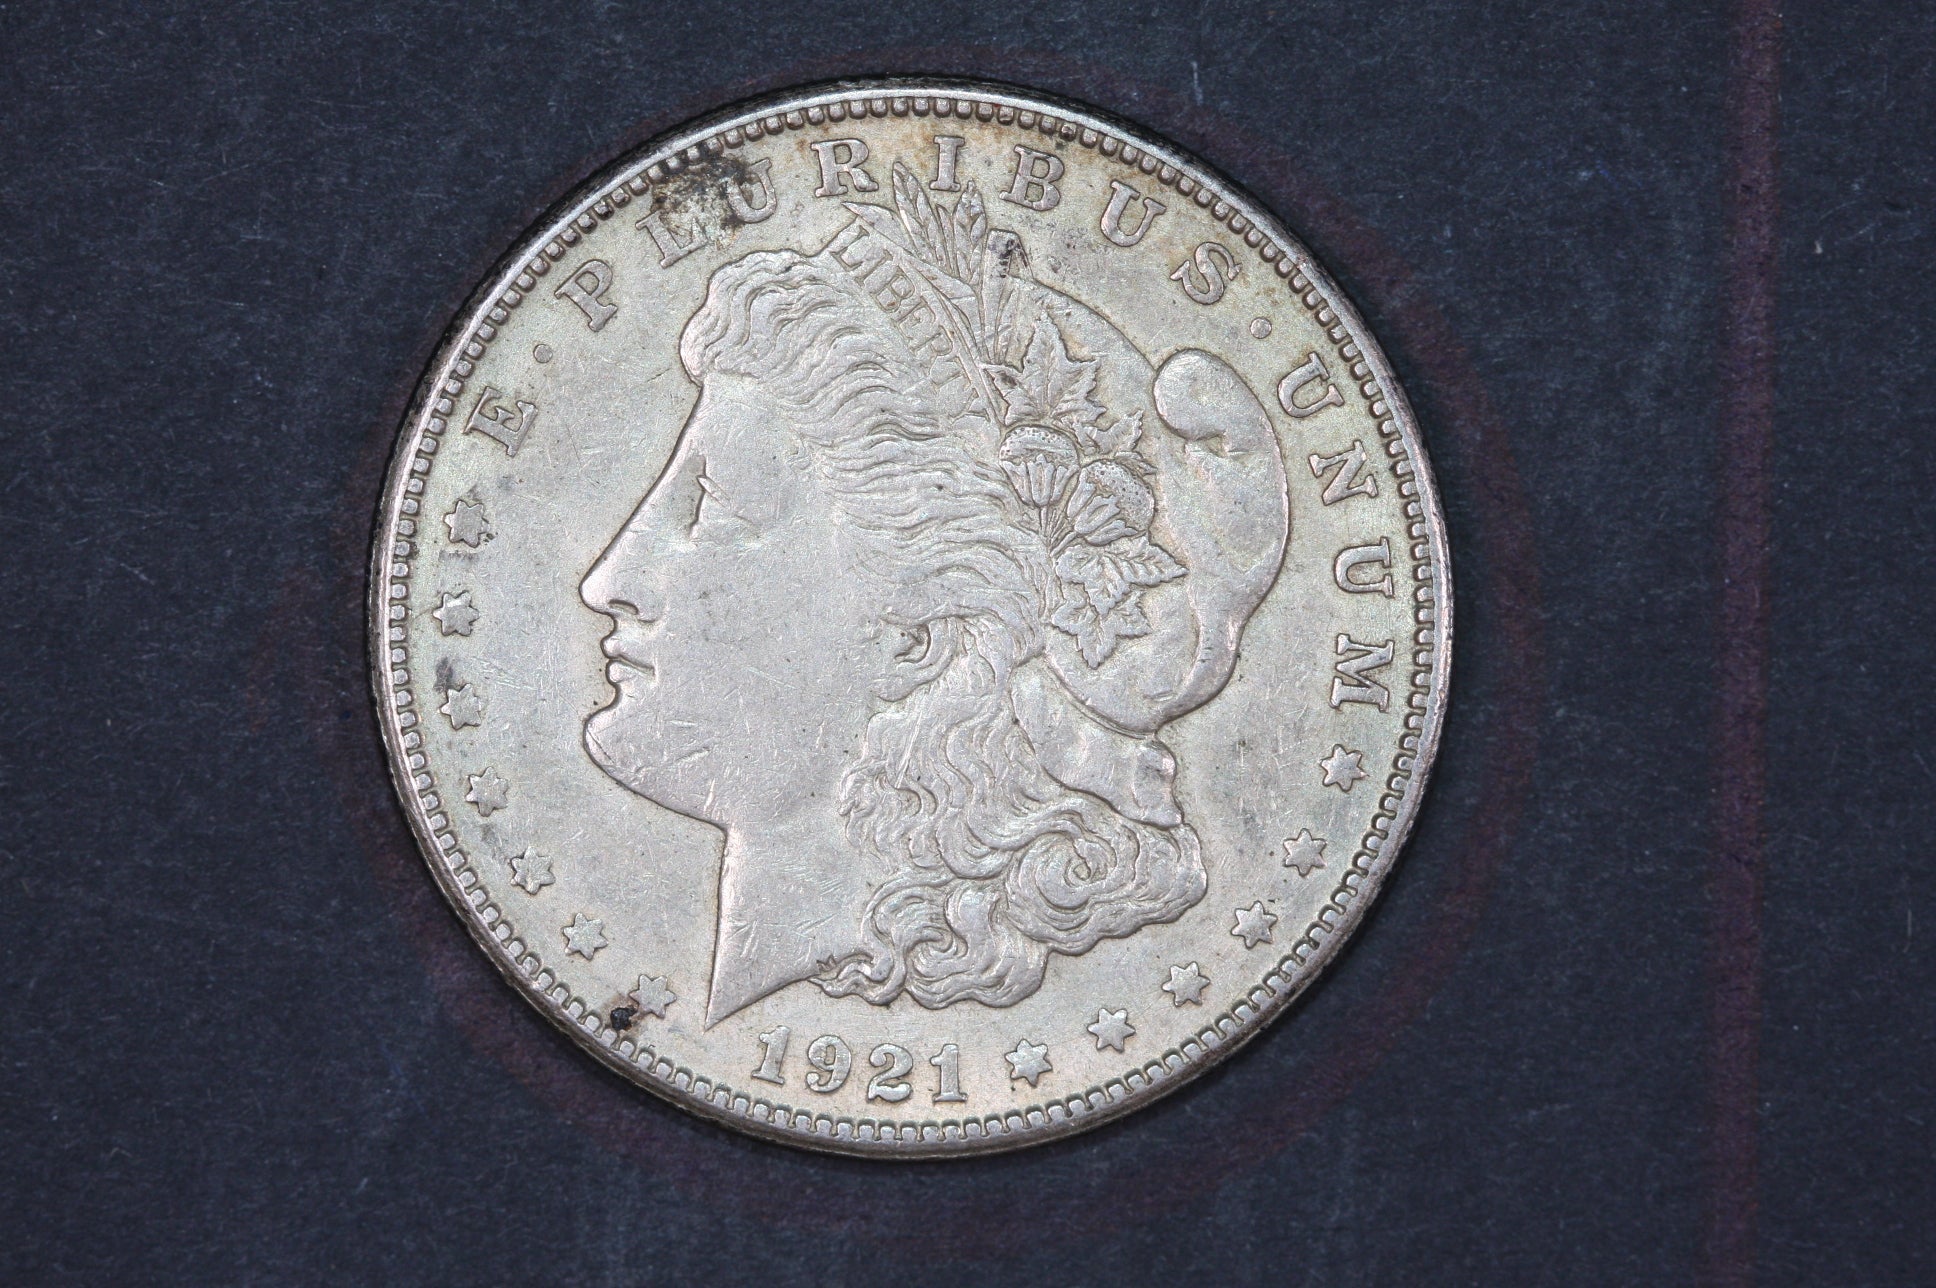 1921 Morgan Silver Dollar Circulated - Spring Hill Coin Shop